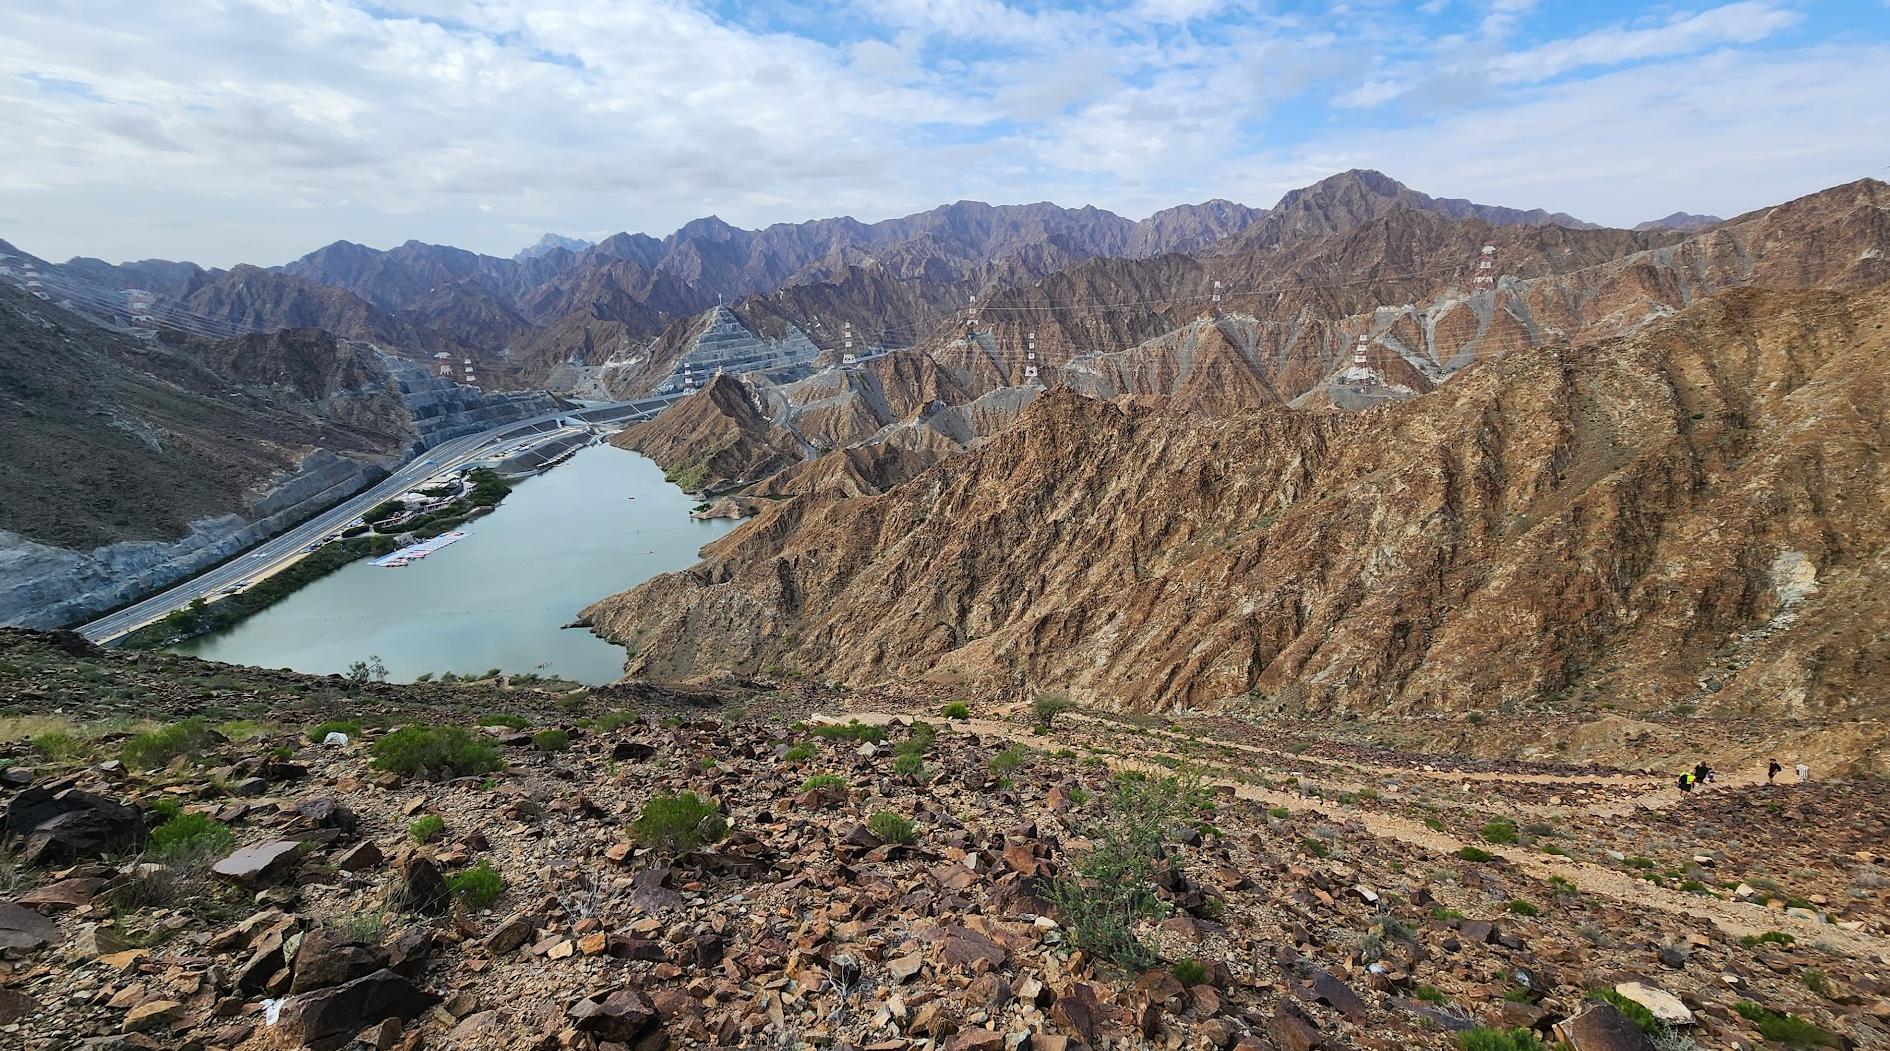 Wadi Shi Raafisah Dam naar observatiedek